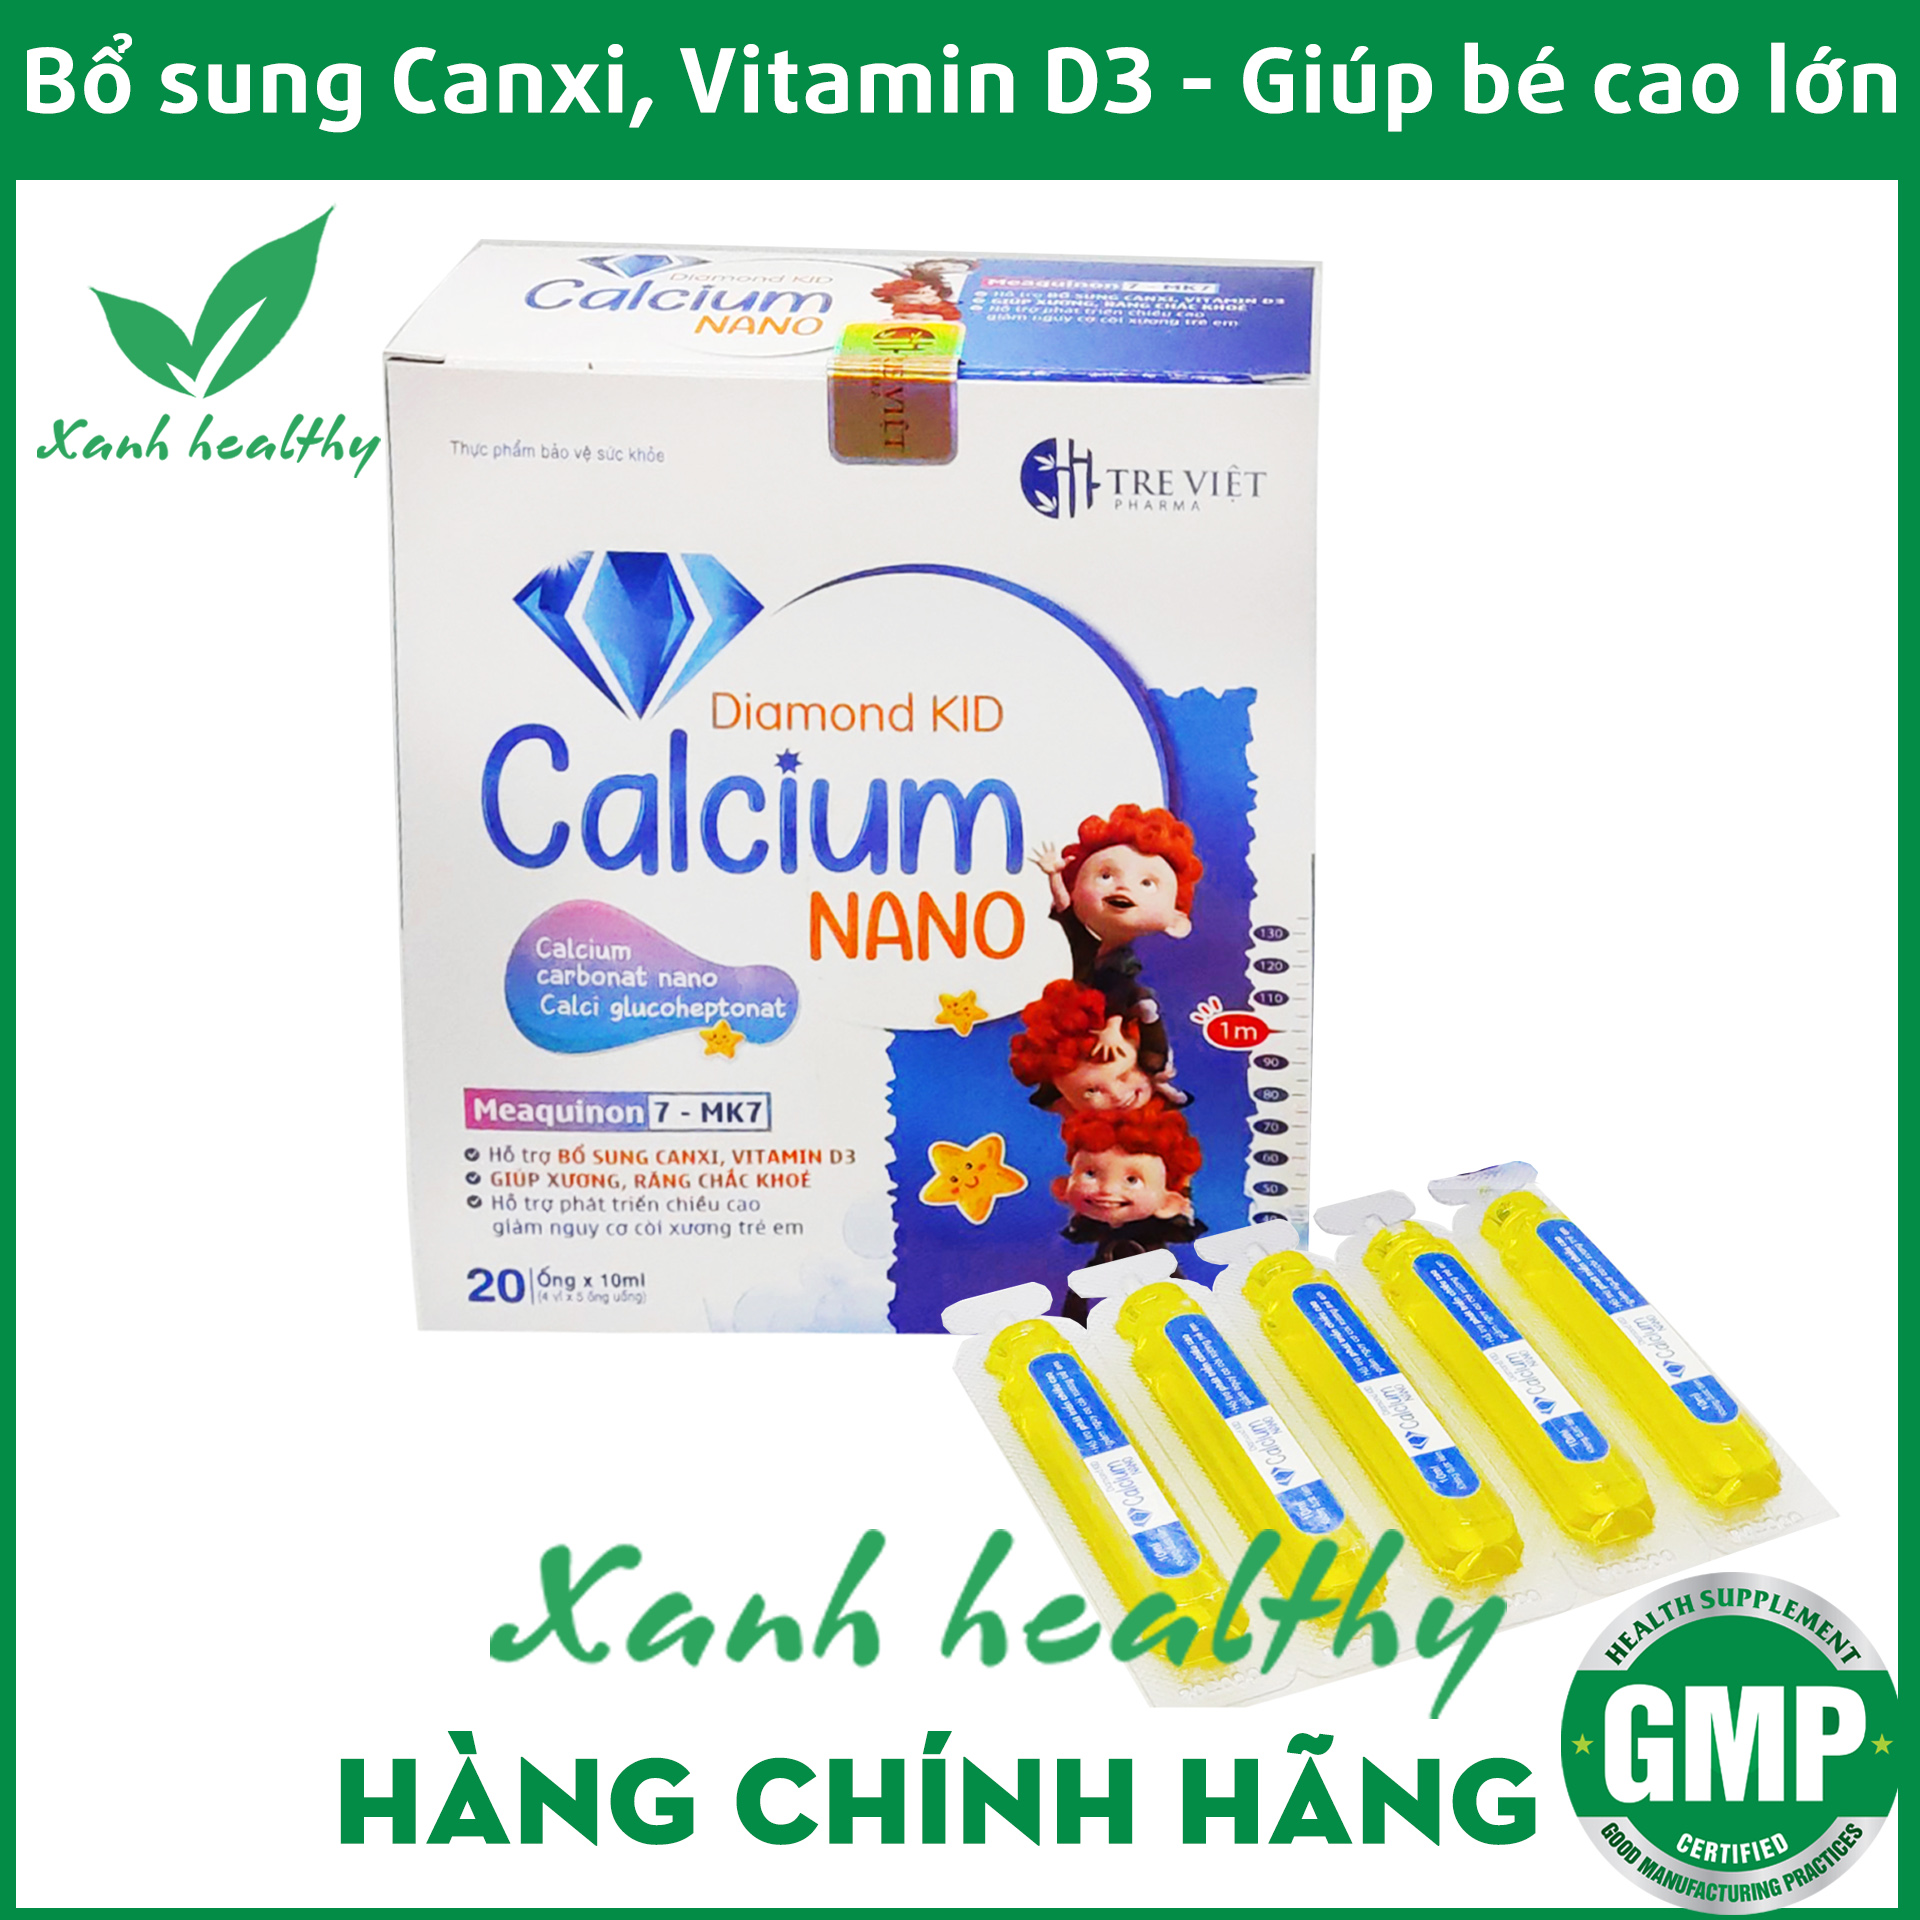 Canxi cho bé CALCIUM NANO Diamond Kid - Canxi cho bé từ 1 tuổi - bổ sung canxi, vitamin D3, K2, giúp phát triển chiều cao, giảm còi xương - Hộp 20 ống XANH Healthy